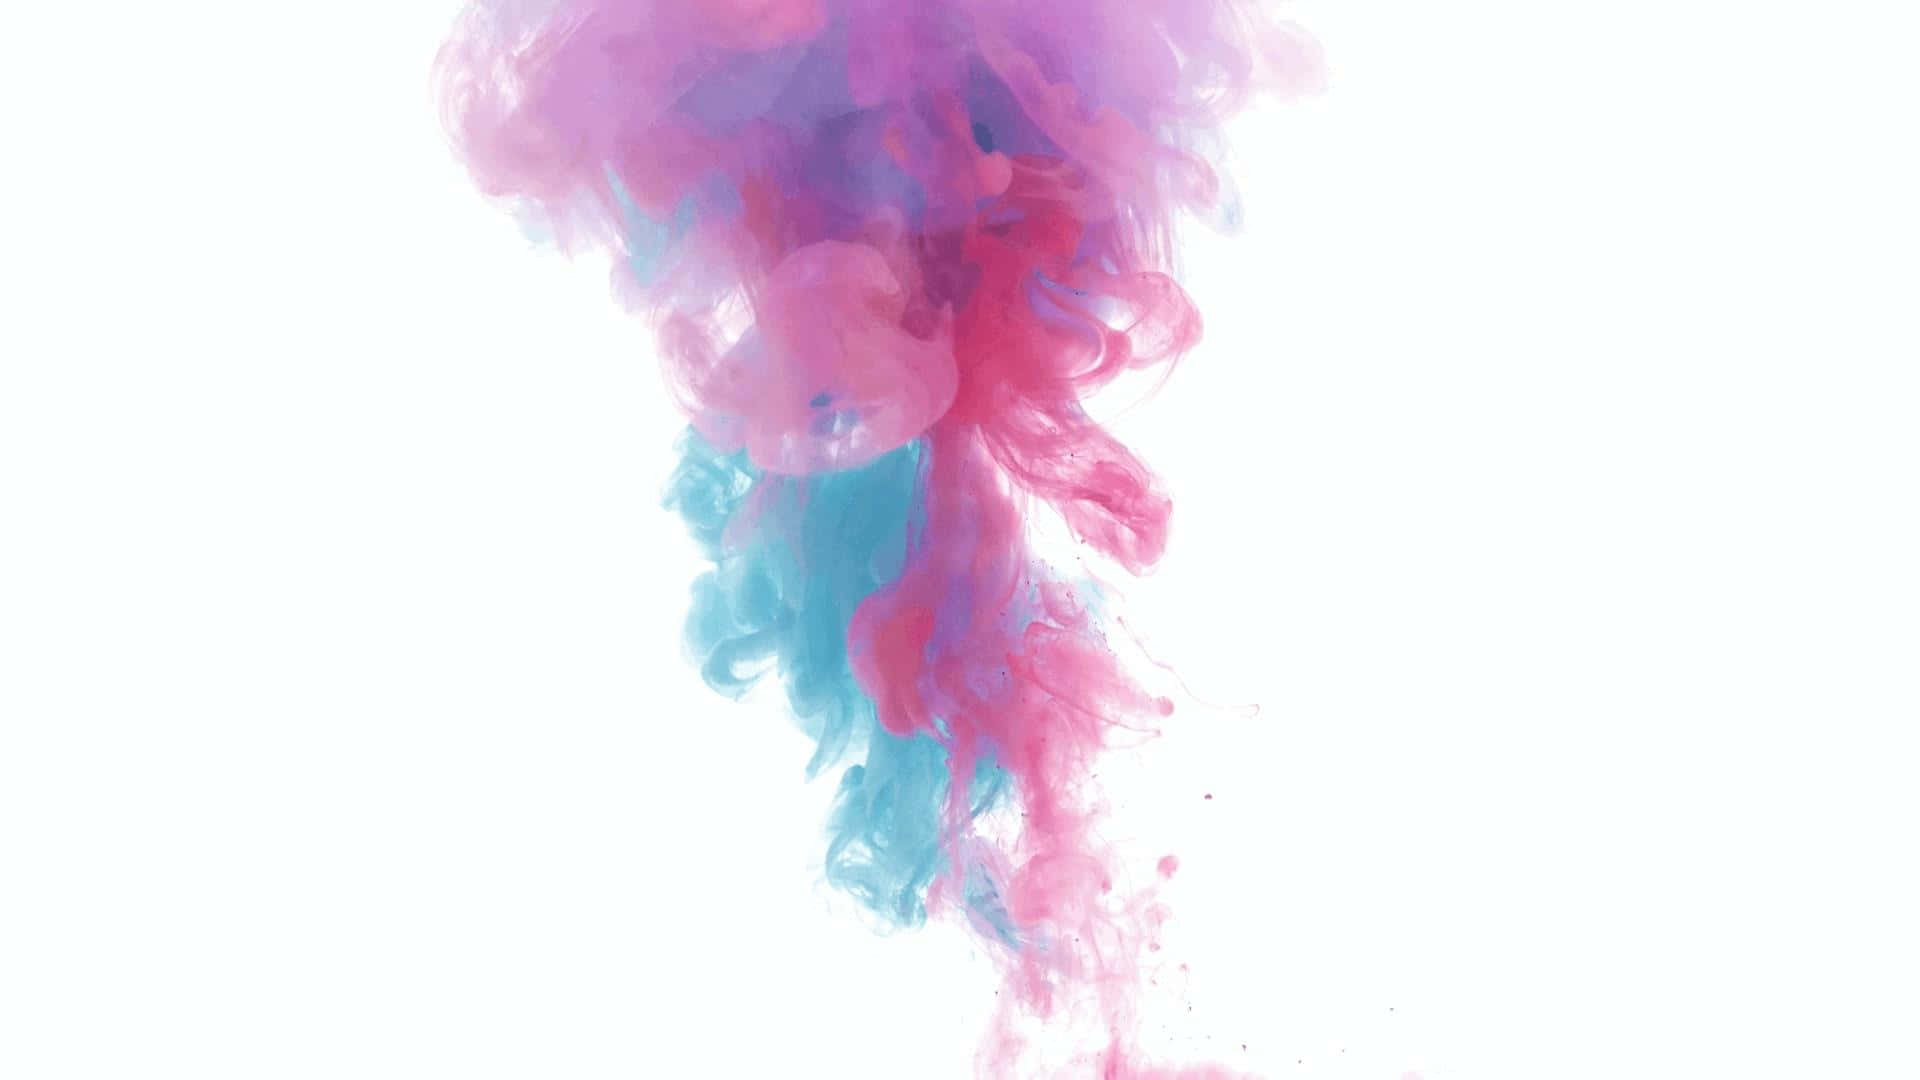 En farverig røg baggrund, med levende nuancer af blå og pink.